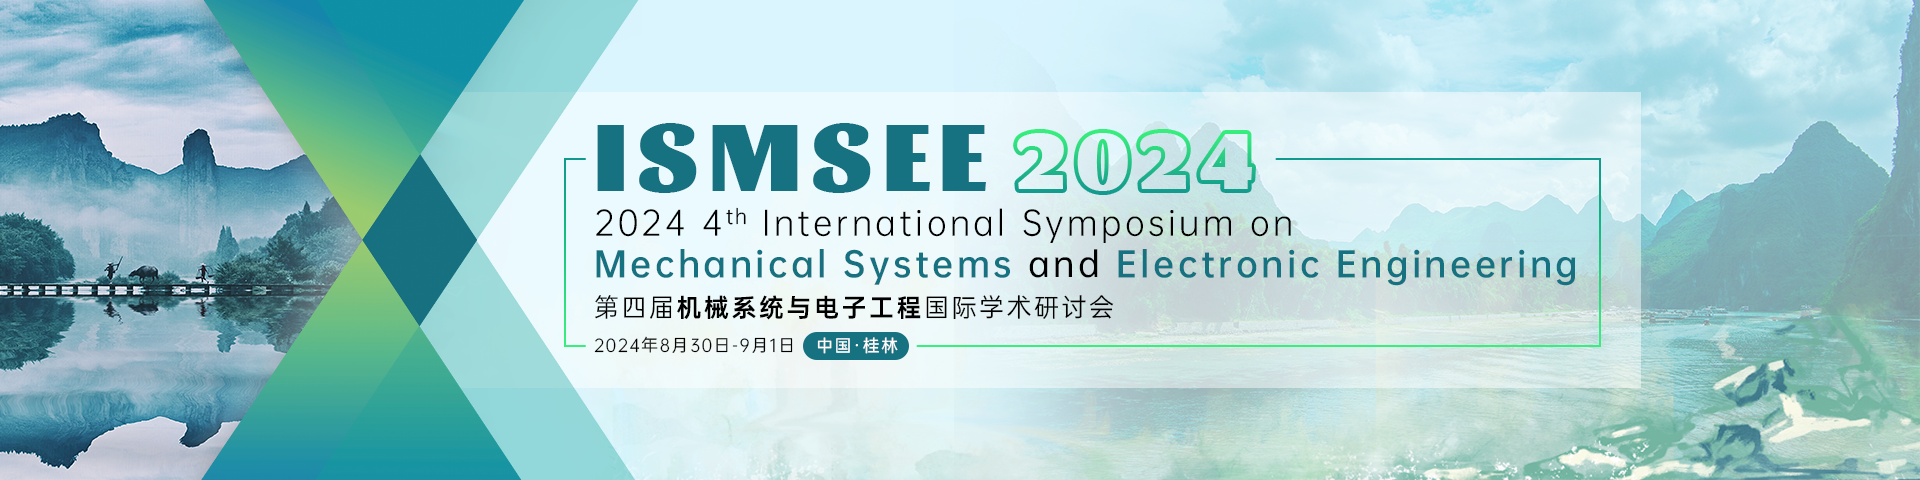 ISMSEE 2024 会议官网中文（地标版）.png